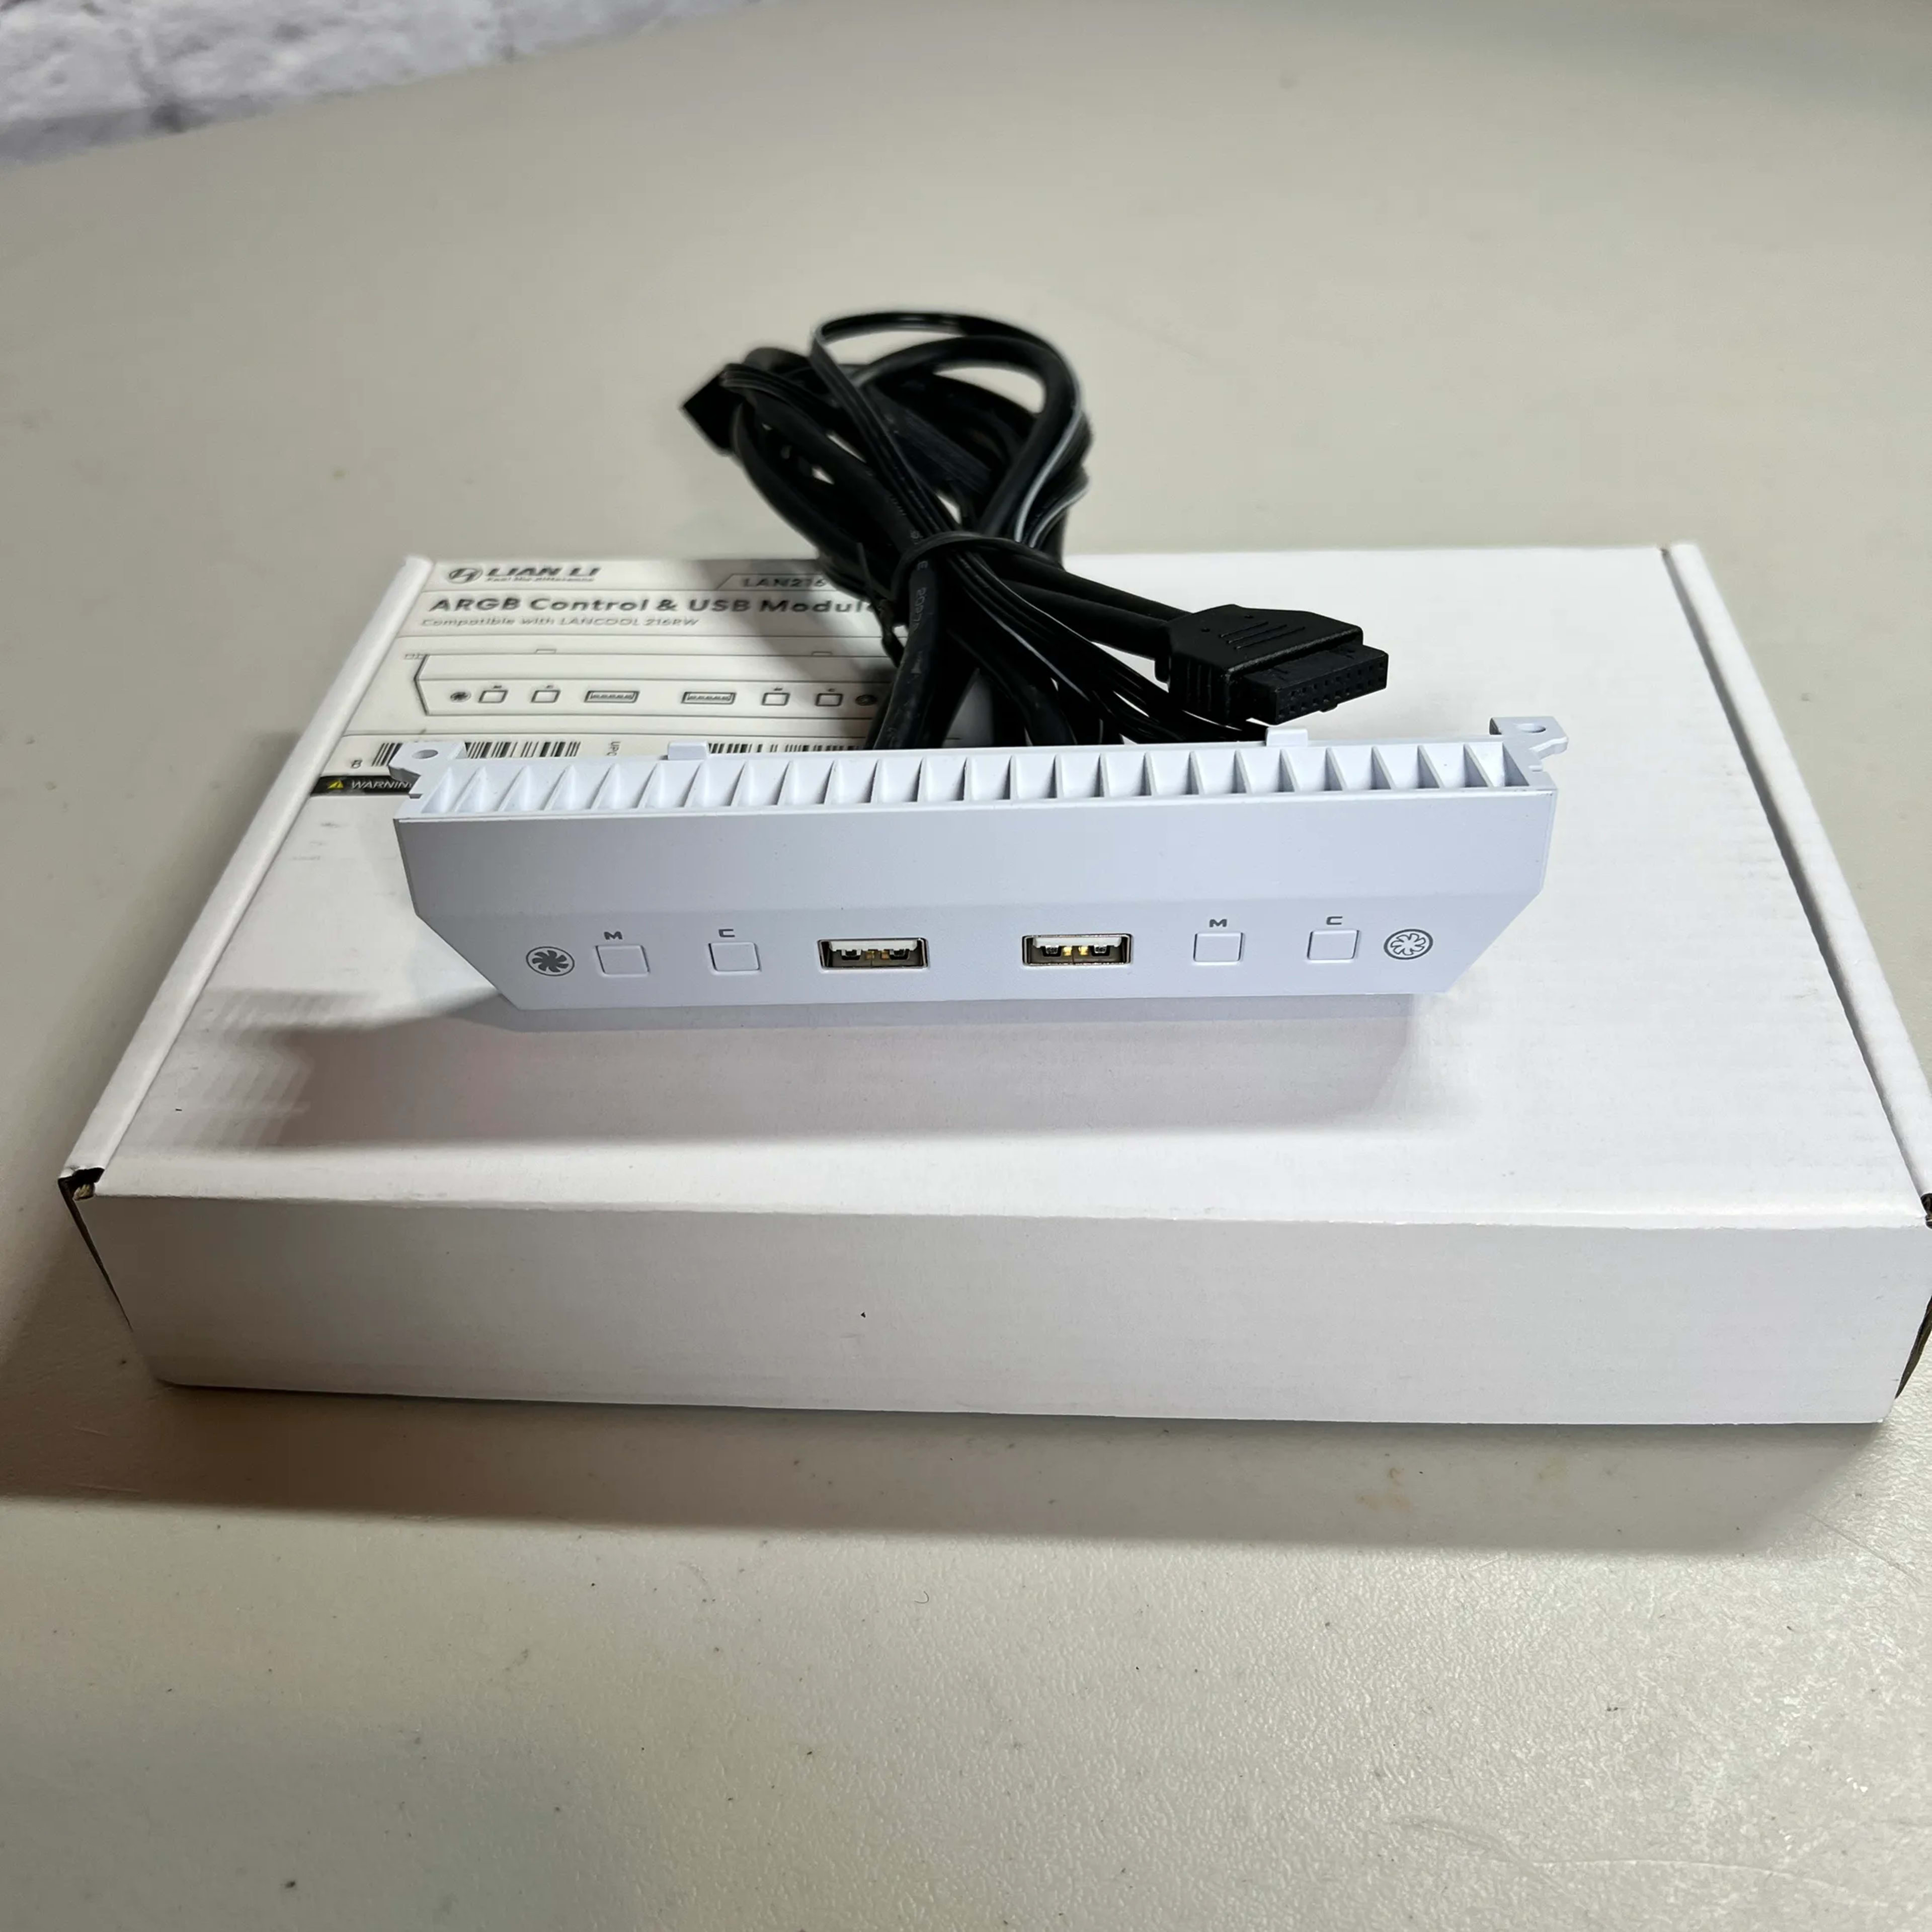 Lian Li LANCOOL 216 ARGB Control & USB Module (White)